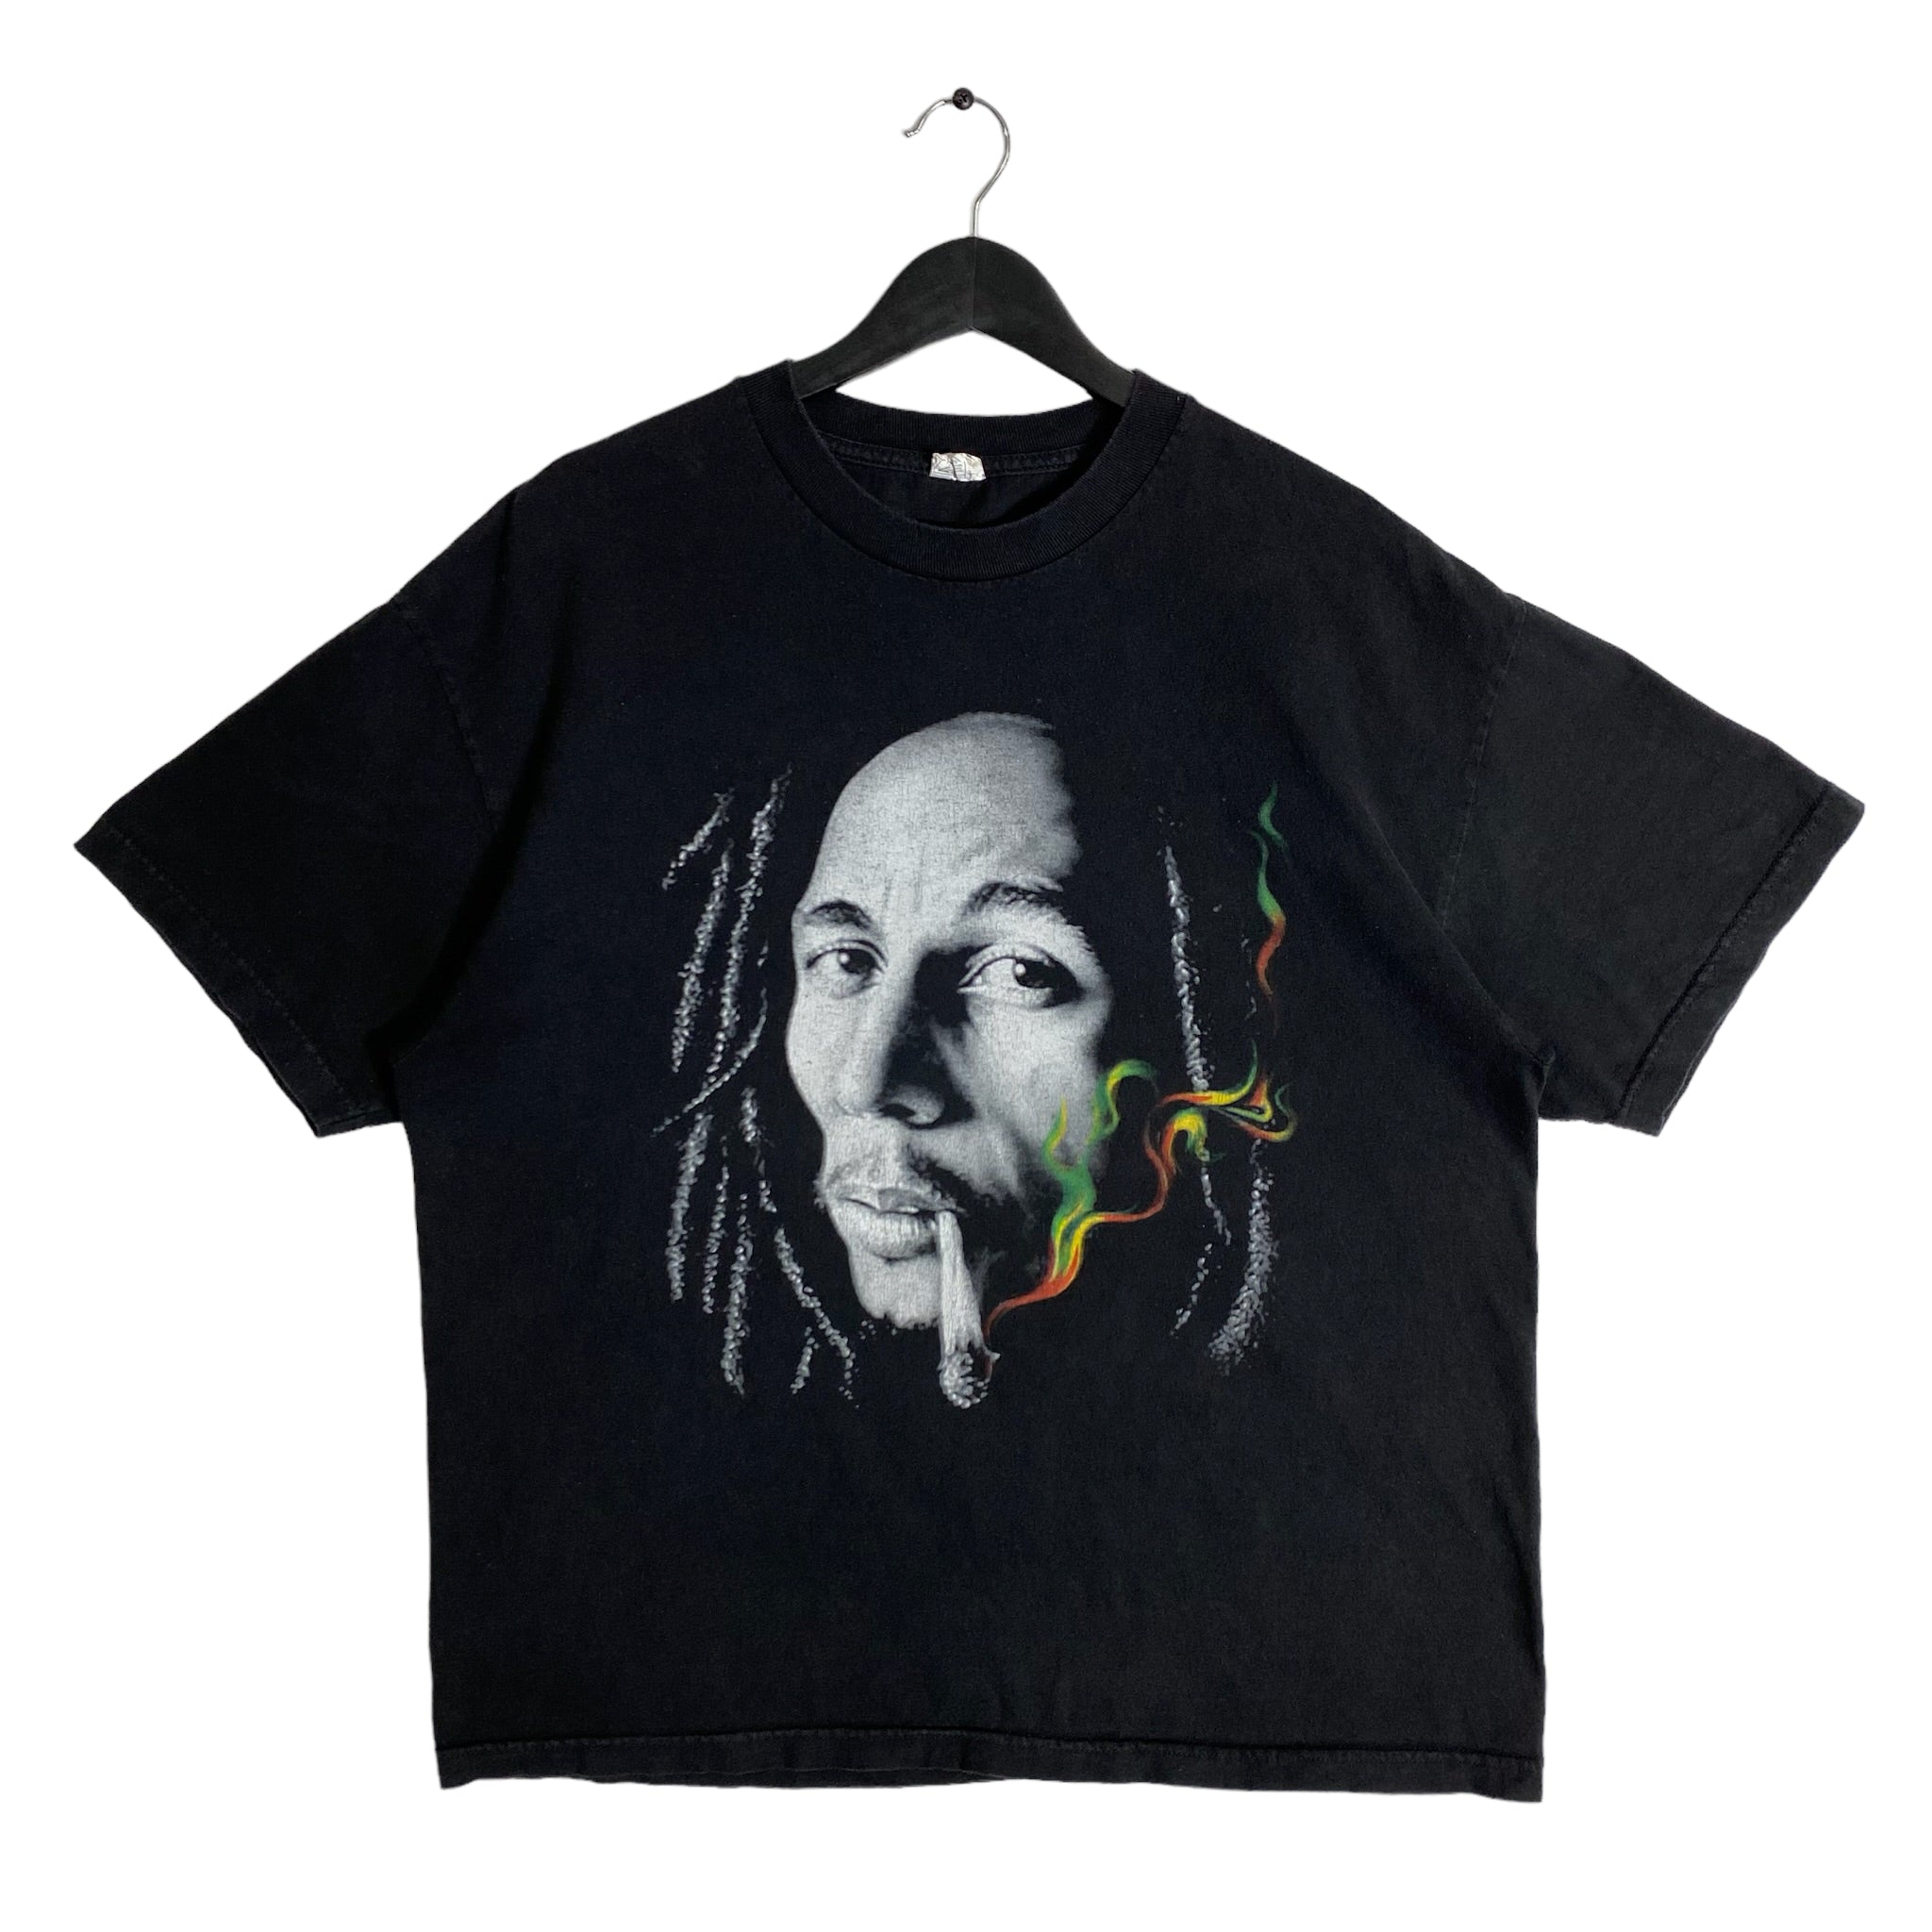 Bob Marley Tee Early 2000s